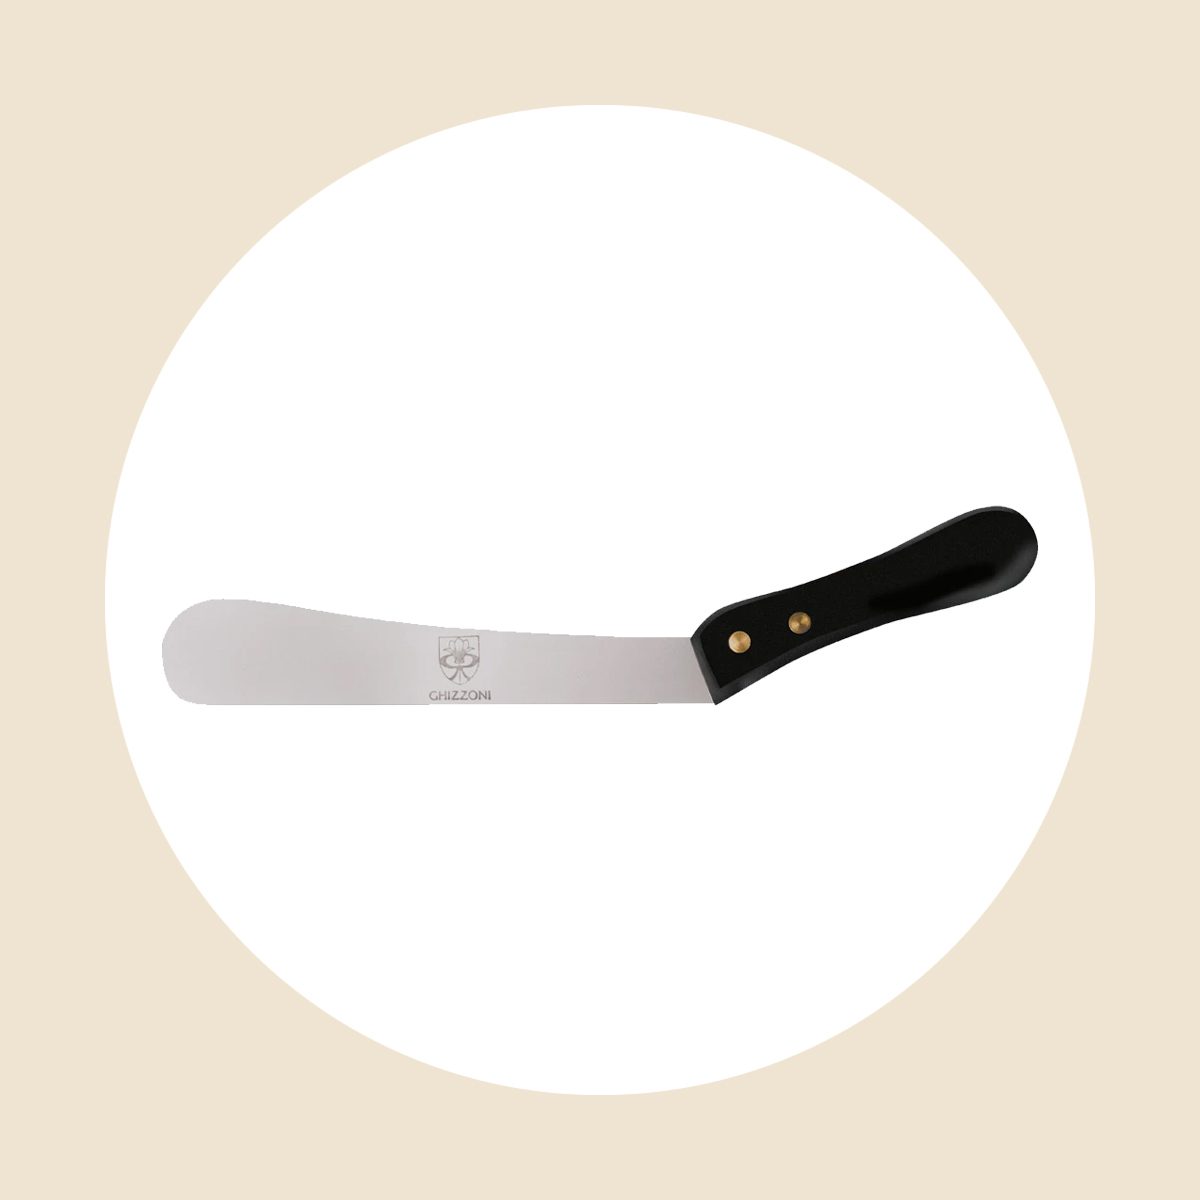 The Gorgonzola Knife